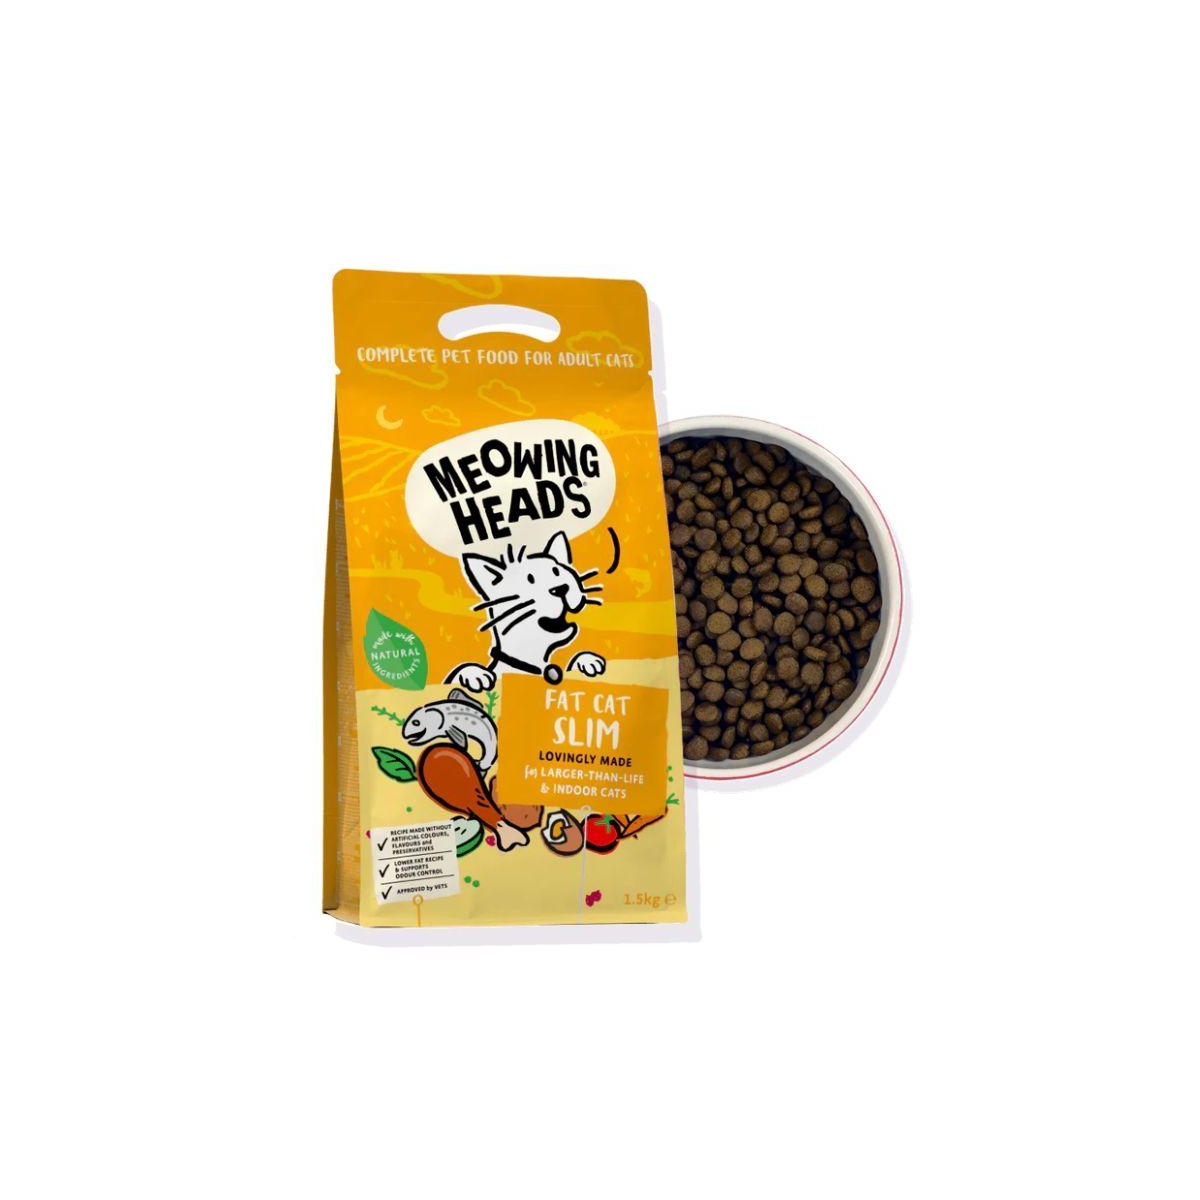 Meowing Heads kassitoit Fat Cat Slim, 1,5 kg